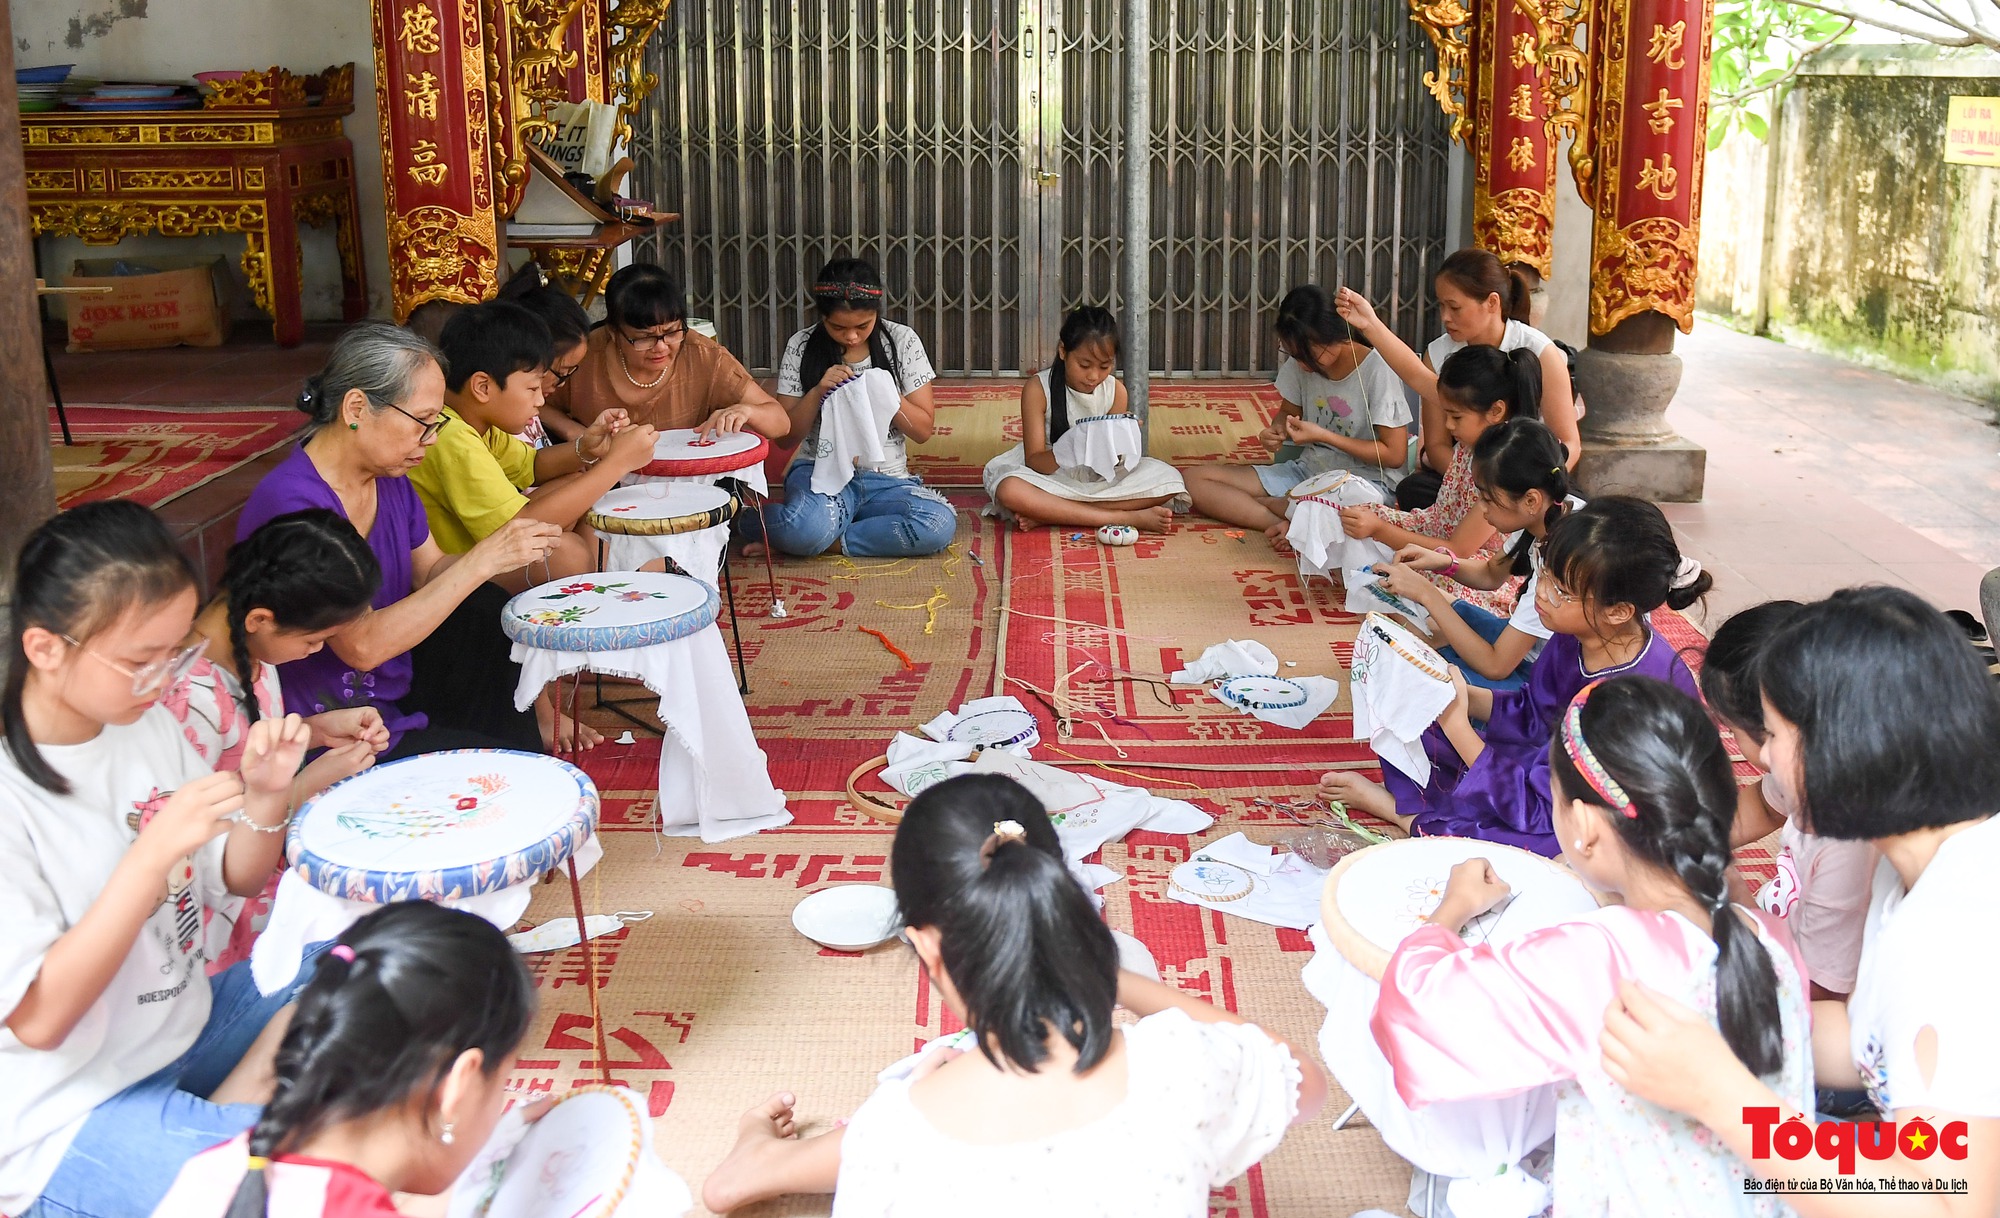 Lớp học đặc biệt nơi các bà giáo già truyền lửa đam mê nghề truyền thống cho trẻ em - Ảnh 14.